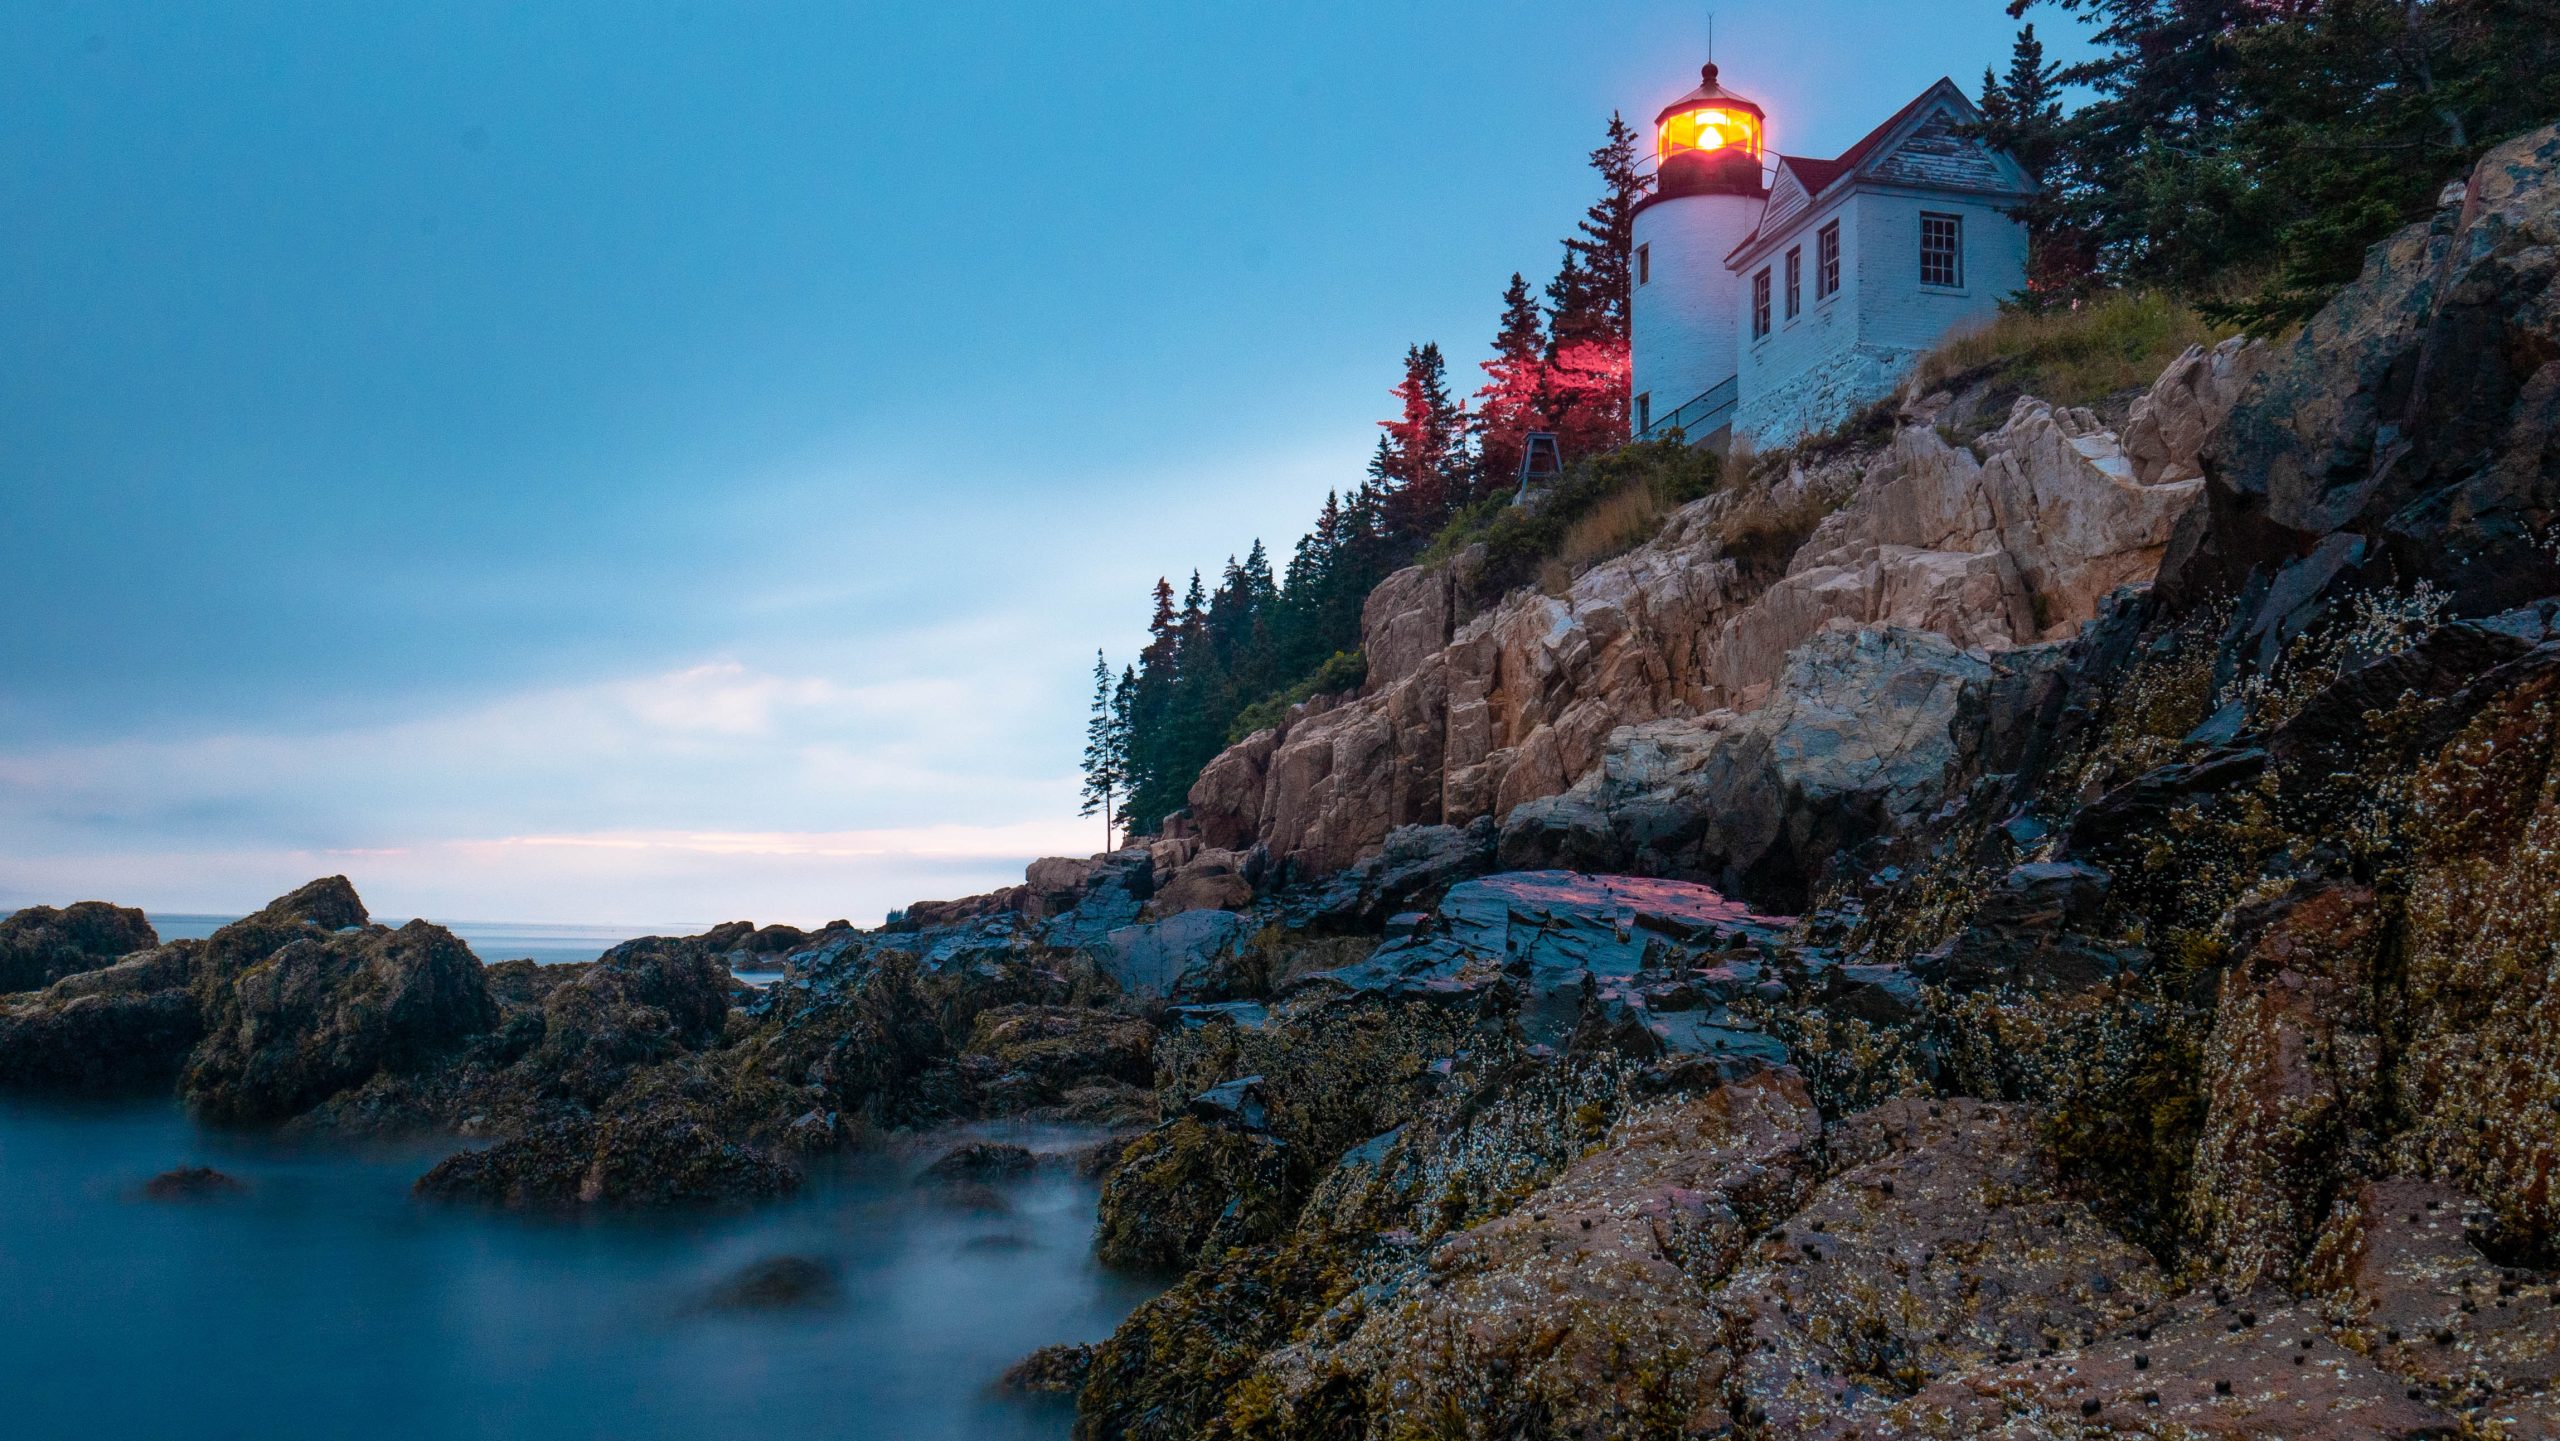 Acadia National Park Harbor - Lighthouse